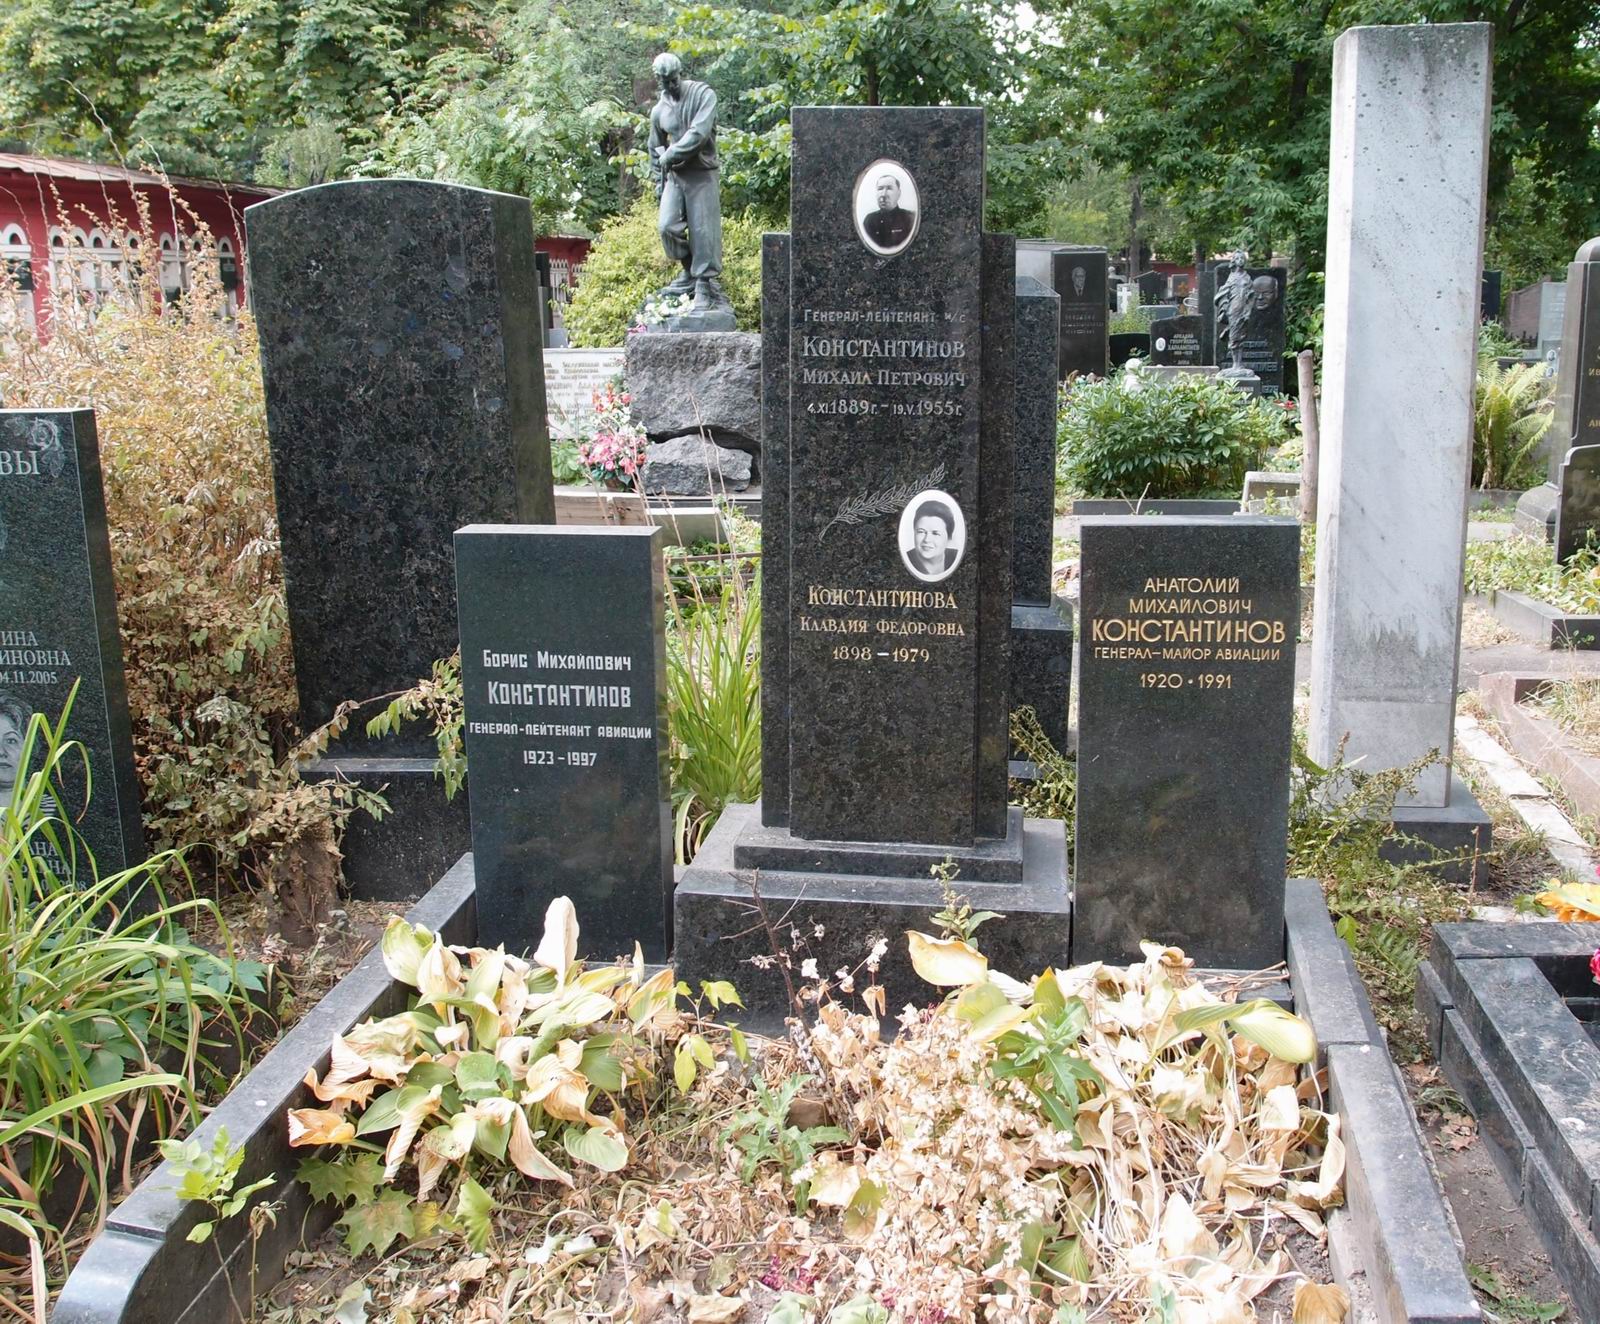 Памятник на могиле Константиновых М.П. (1889-1955) и Б.М. (1923-1997), на Новодевичьем кладбище (4-28-17).